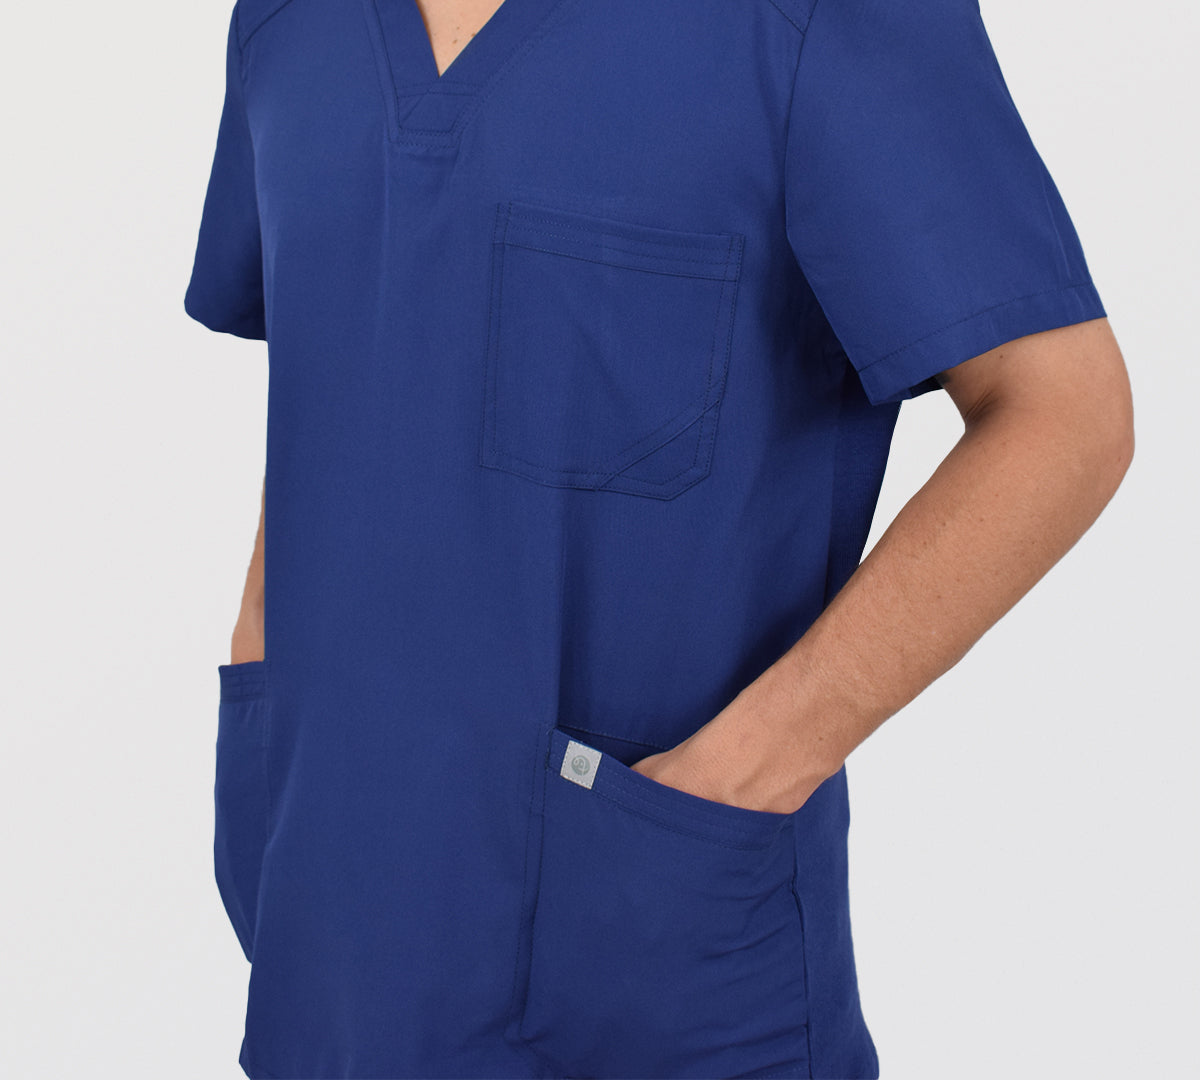 uniforme clinico azul